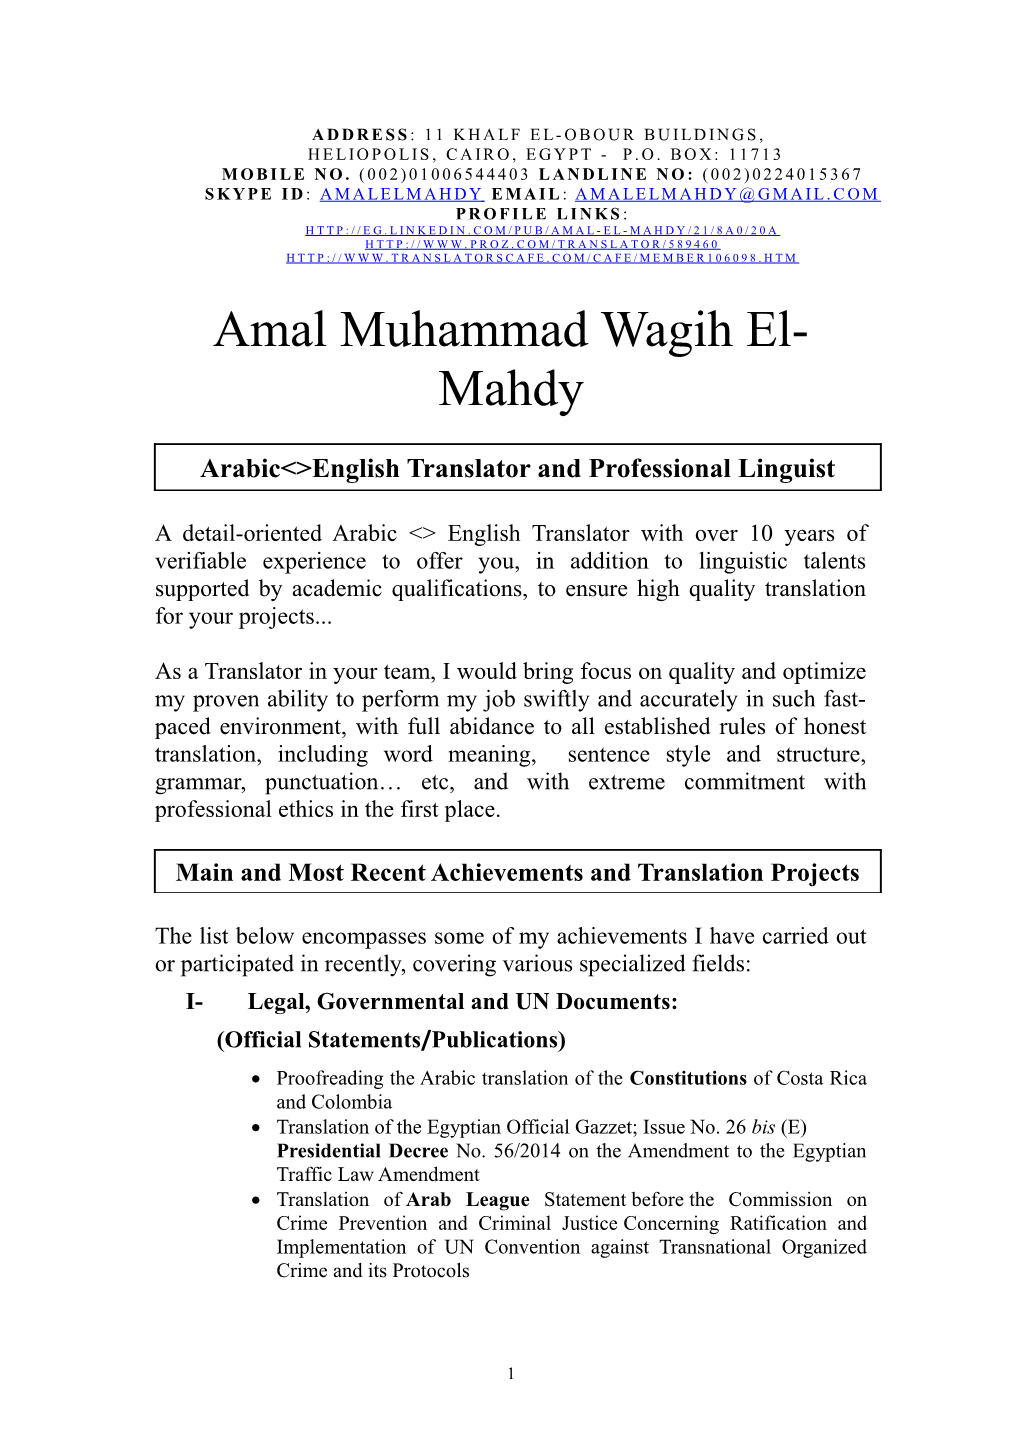 Amal Muhammad Wagih El-Mahdy